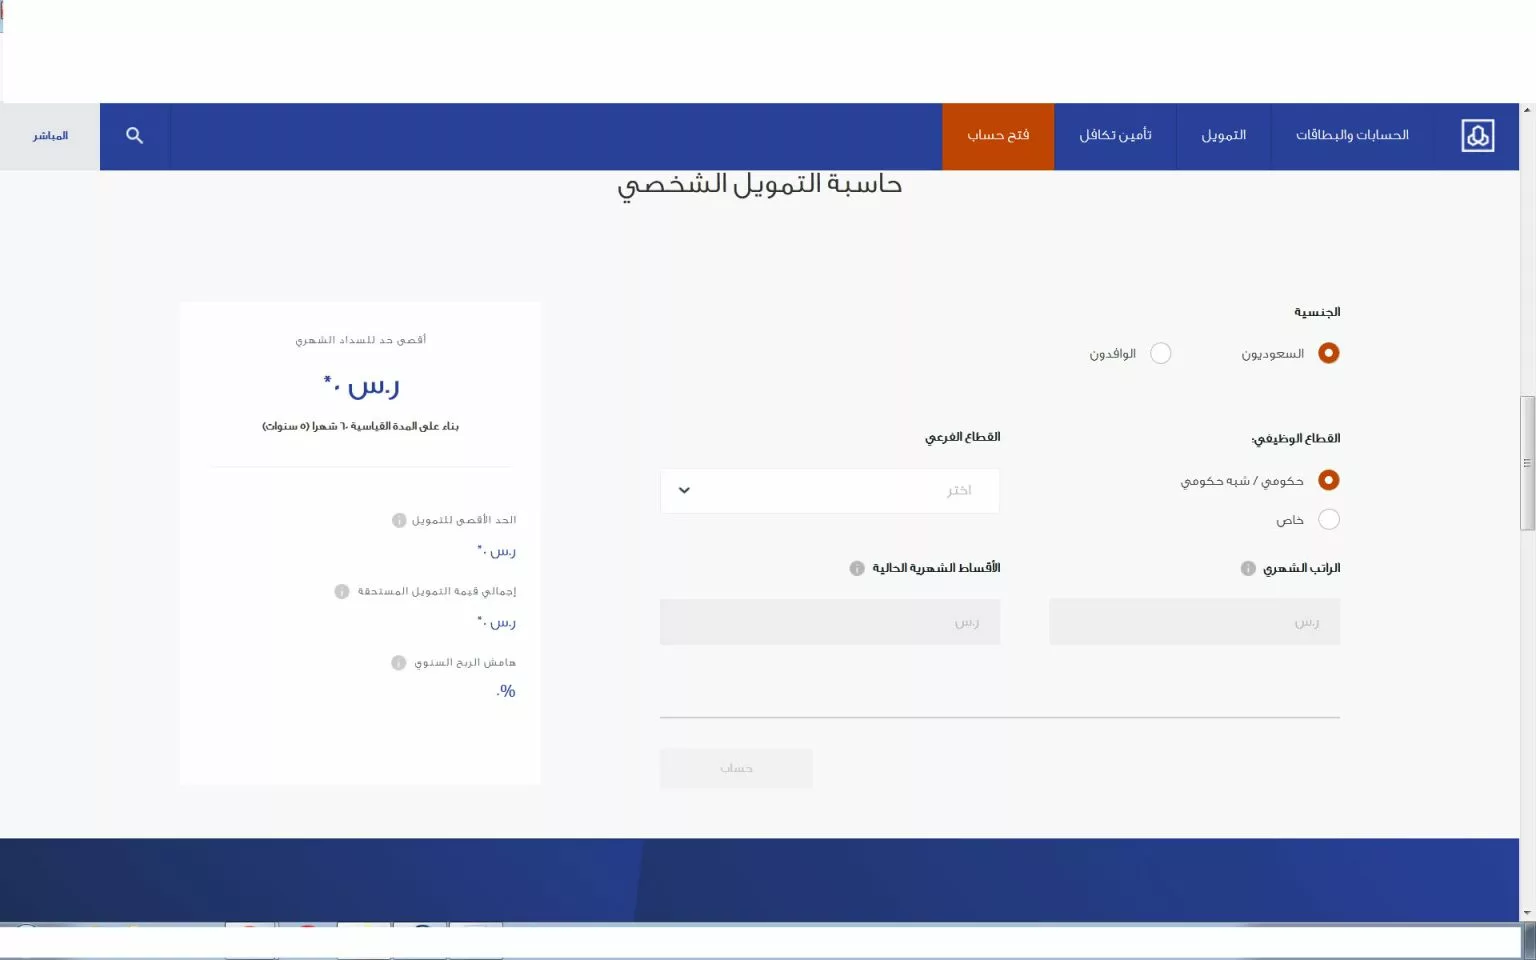 حاسبة الراجحي الإلكترونية jpg - مدونة التقنية العربية